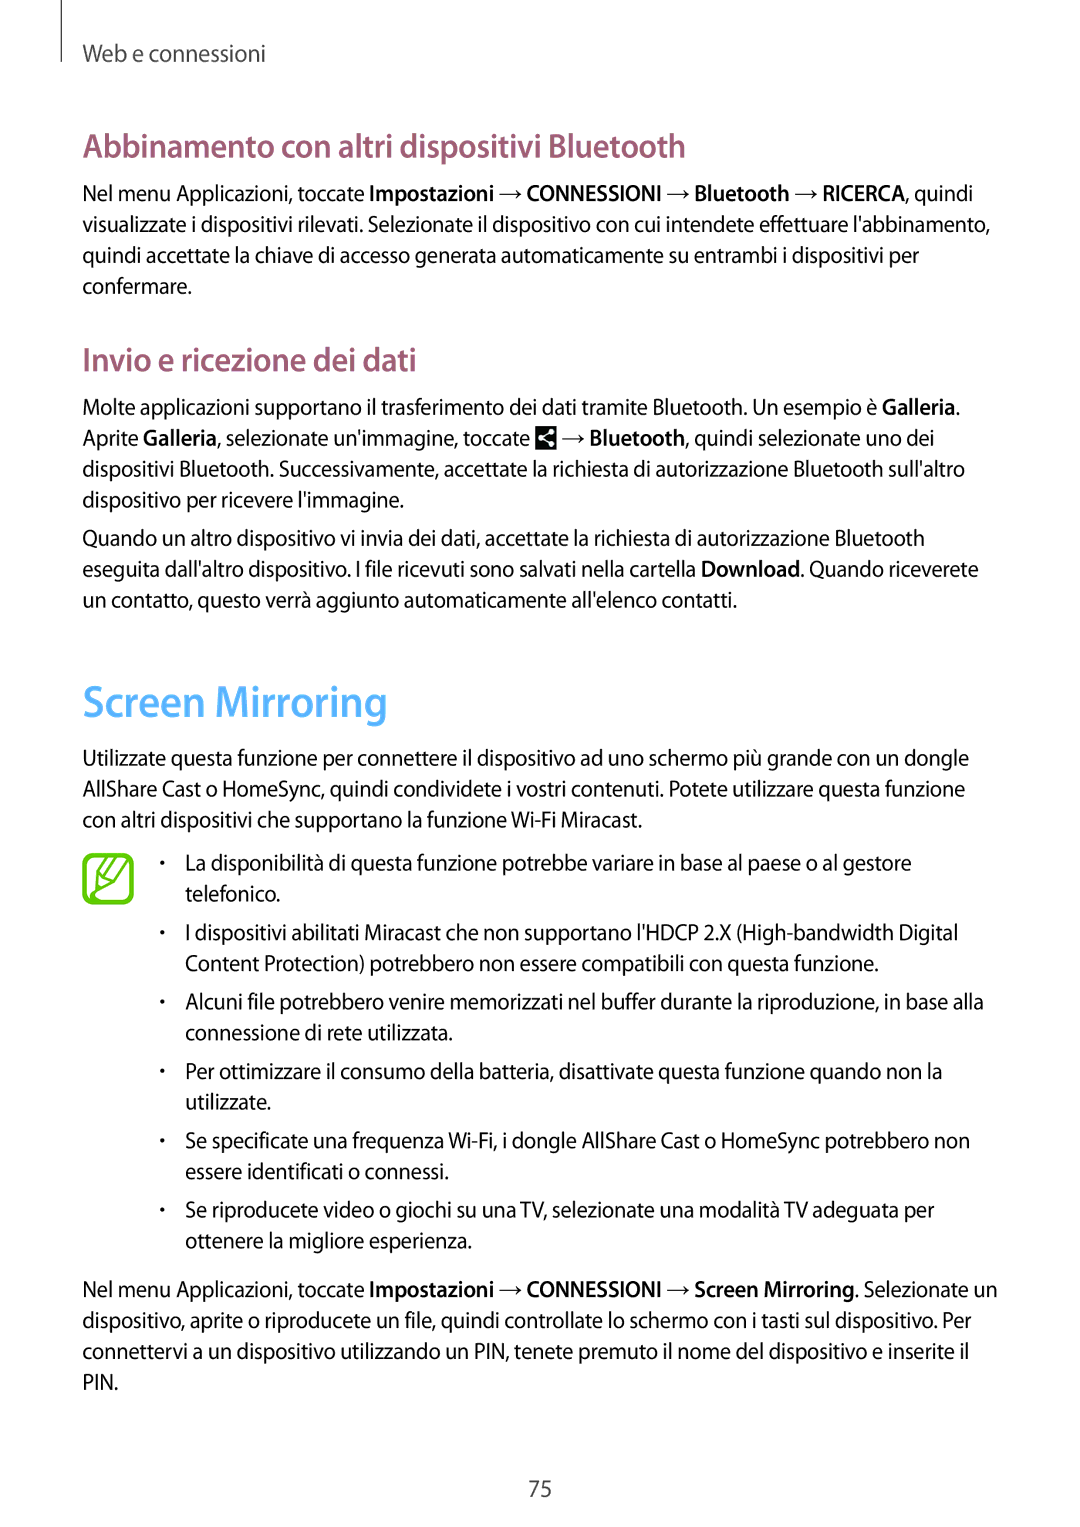 Samsung SM-P9050ZKYITV manual Screen Mirroring, Abbinamento con altri dispositivi Bluetooth, Invio e ricezione dei dati 